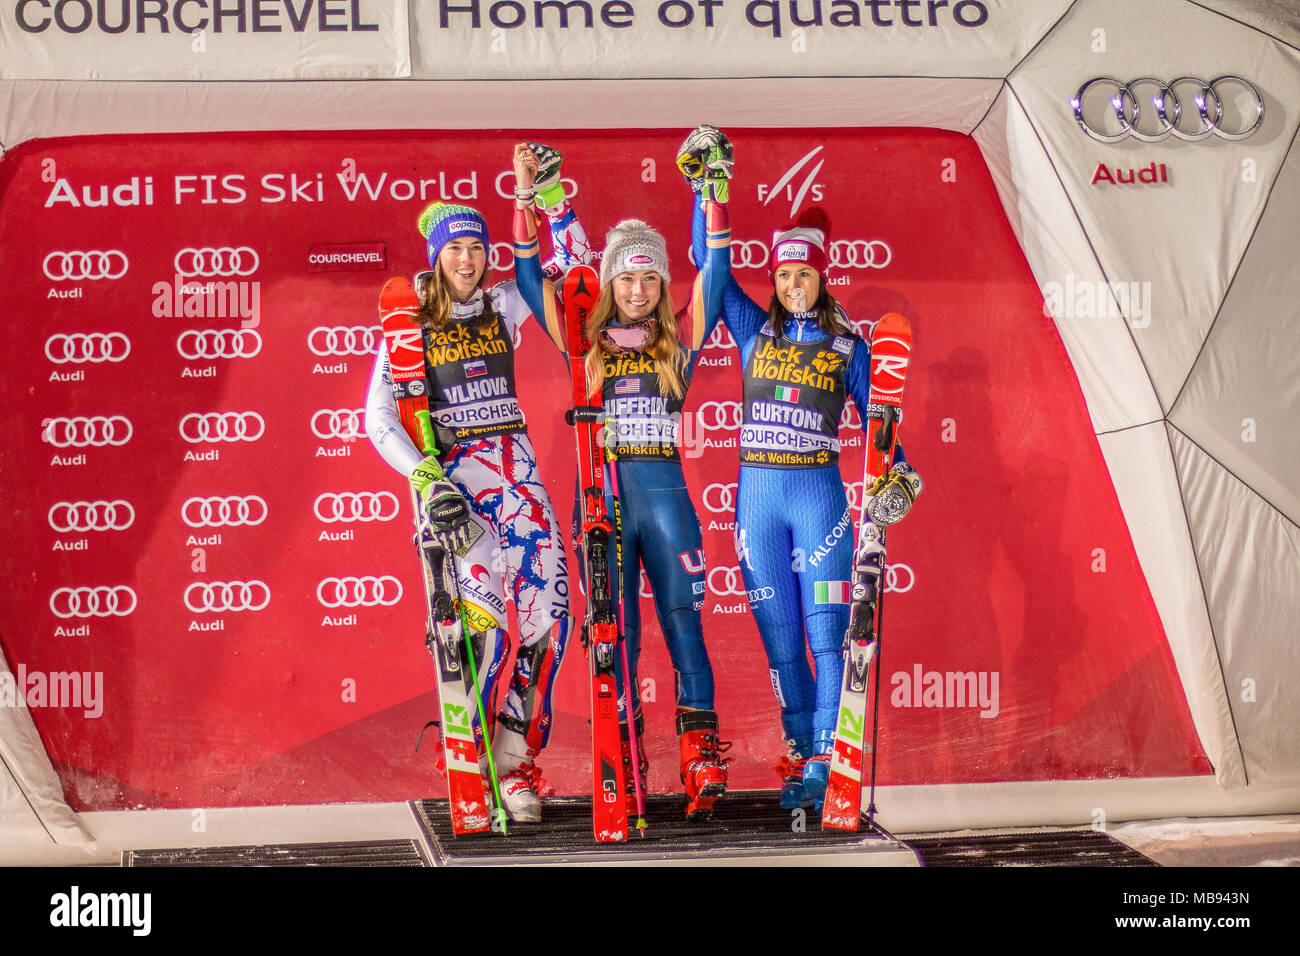 20 décembre 2017, Courchevel, Savoie, France, Mikaela Shiffrin de Usa vainqueur du slalom parallèle de Courchevel Ski Dames podium Coupe du monde présent Banque D'Images